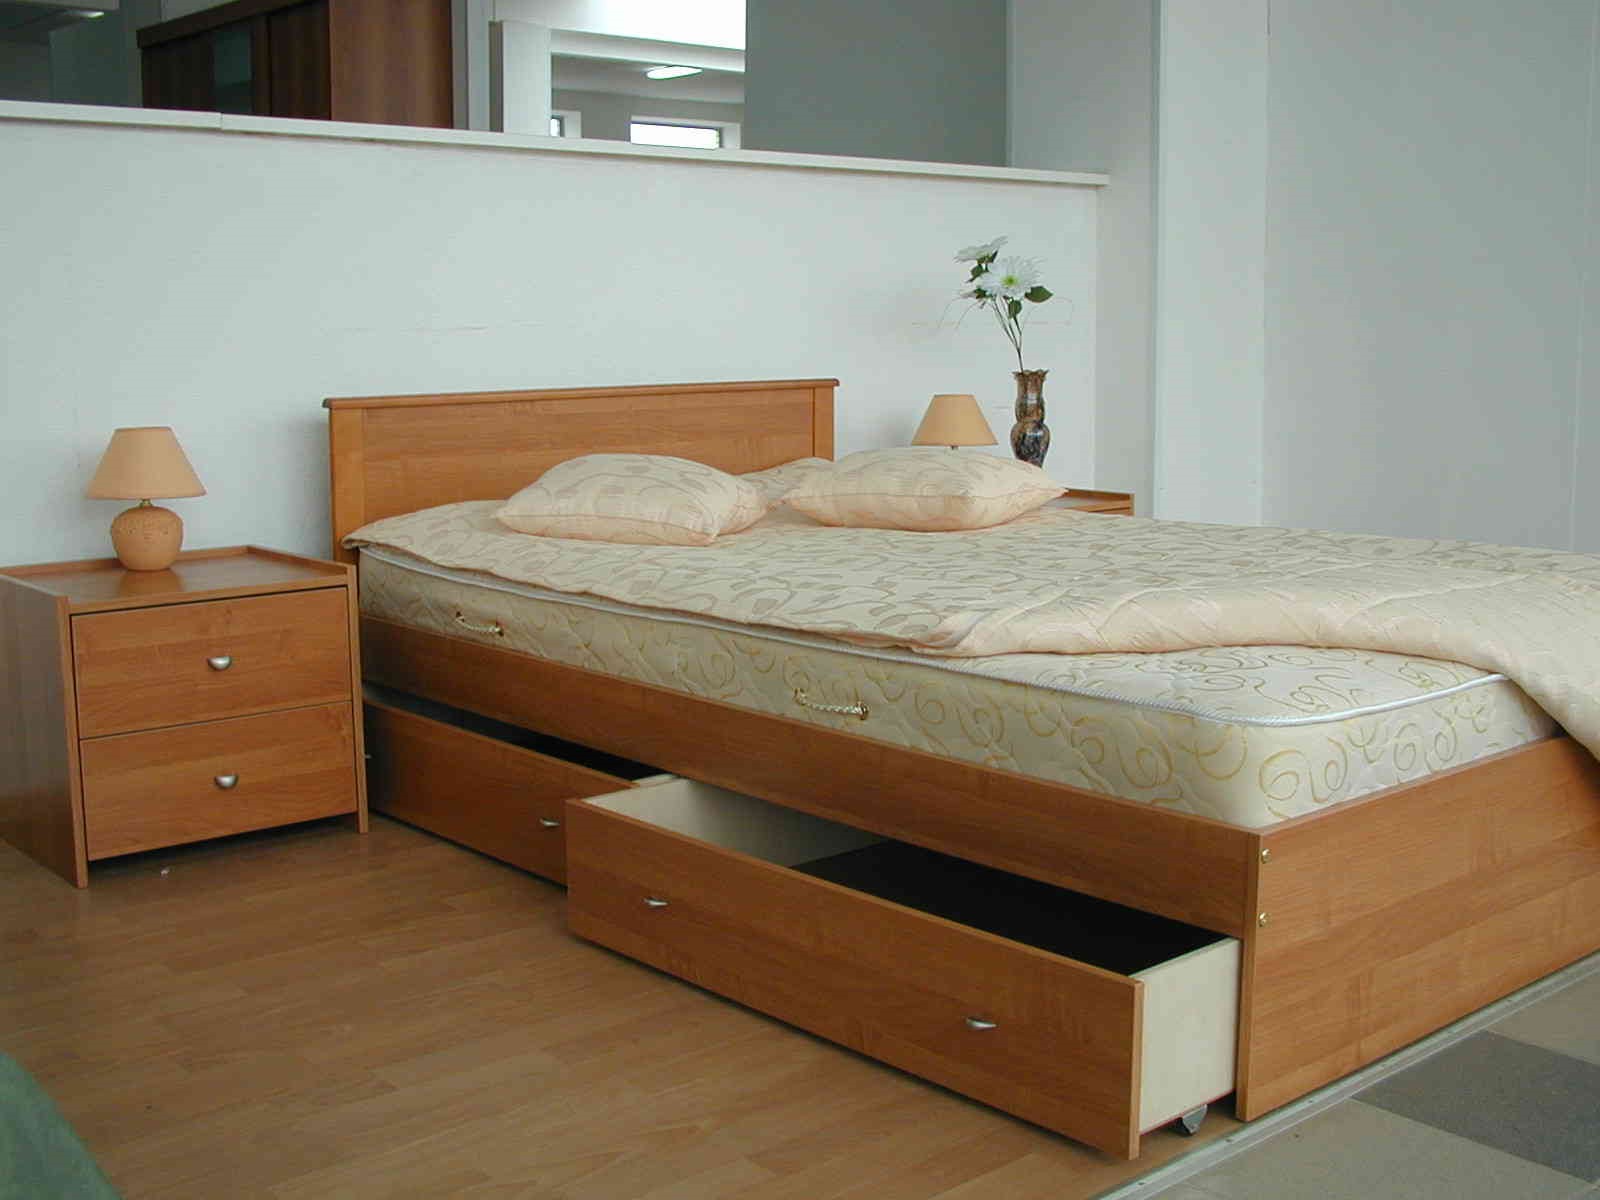 Кровать-подиум с нишей для хранения вещей